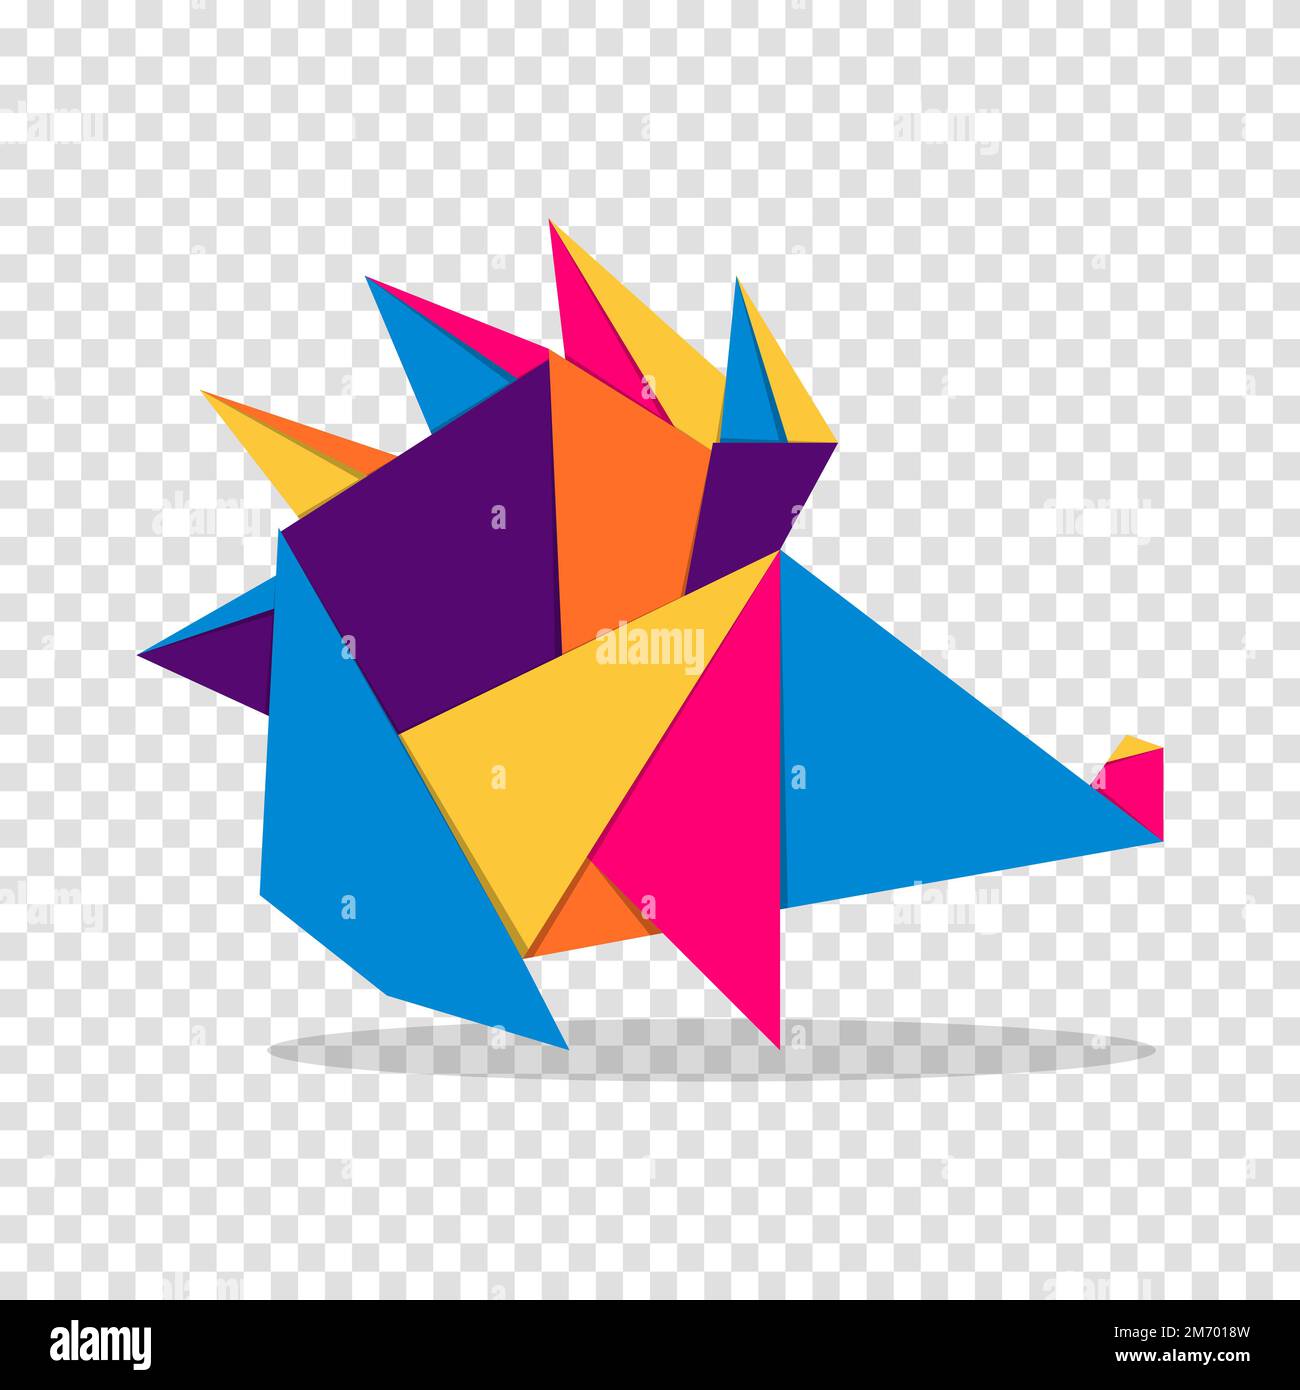 Stachelschwein-Origami. Abstraktes, farbenfrohes, leuchtendes Stachelschwein-Logo. Tierische Origami. Vektordarstellung Stock Vektor